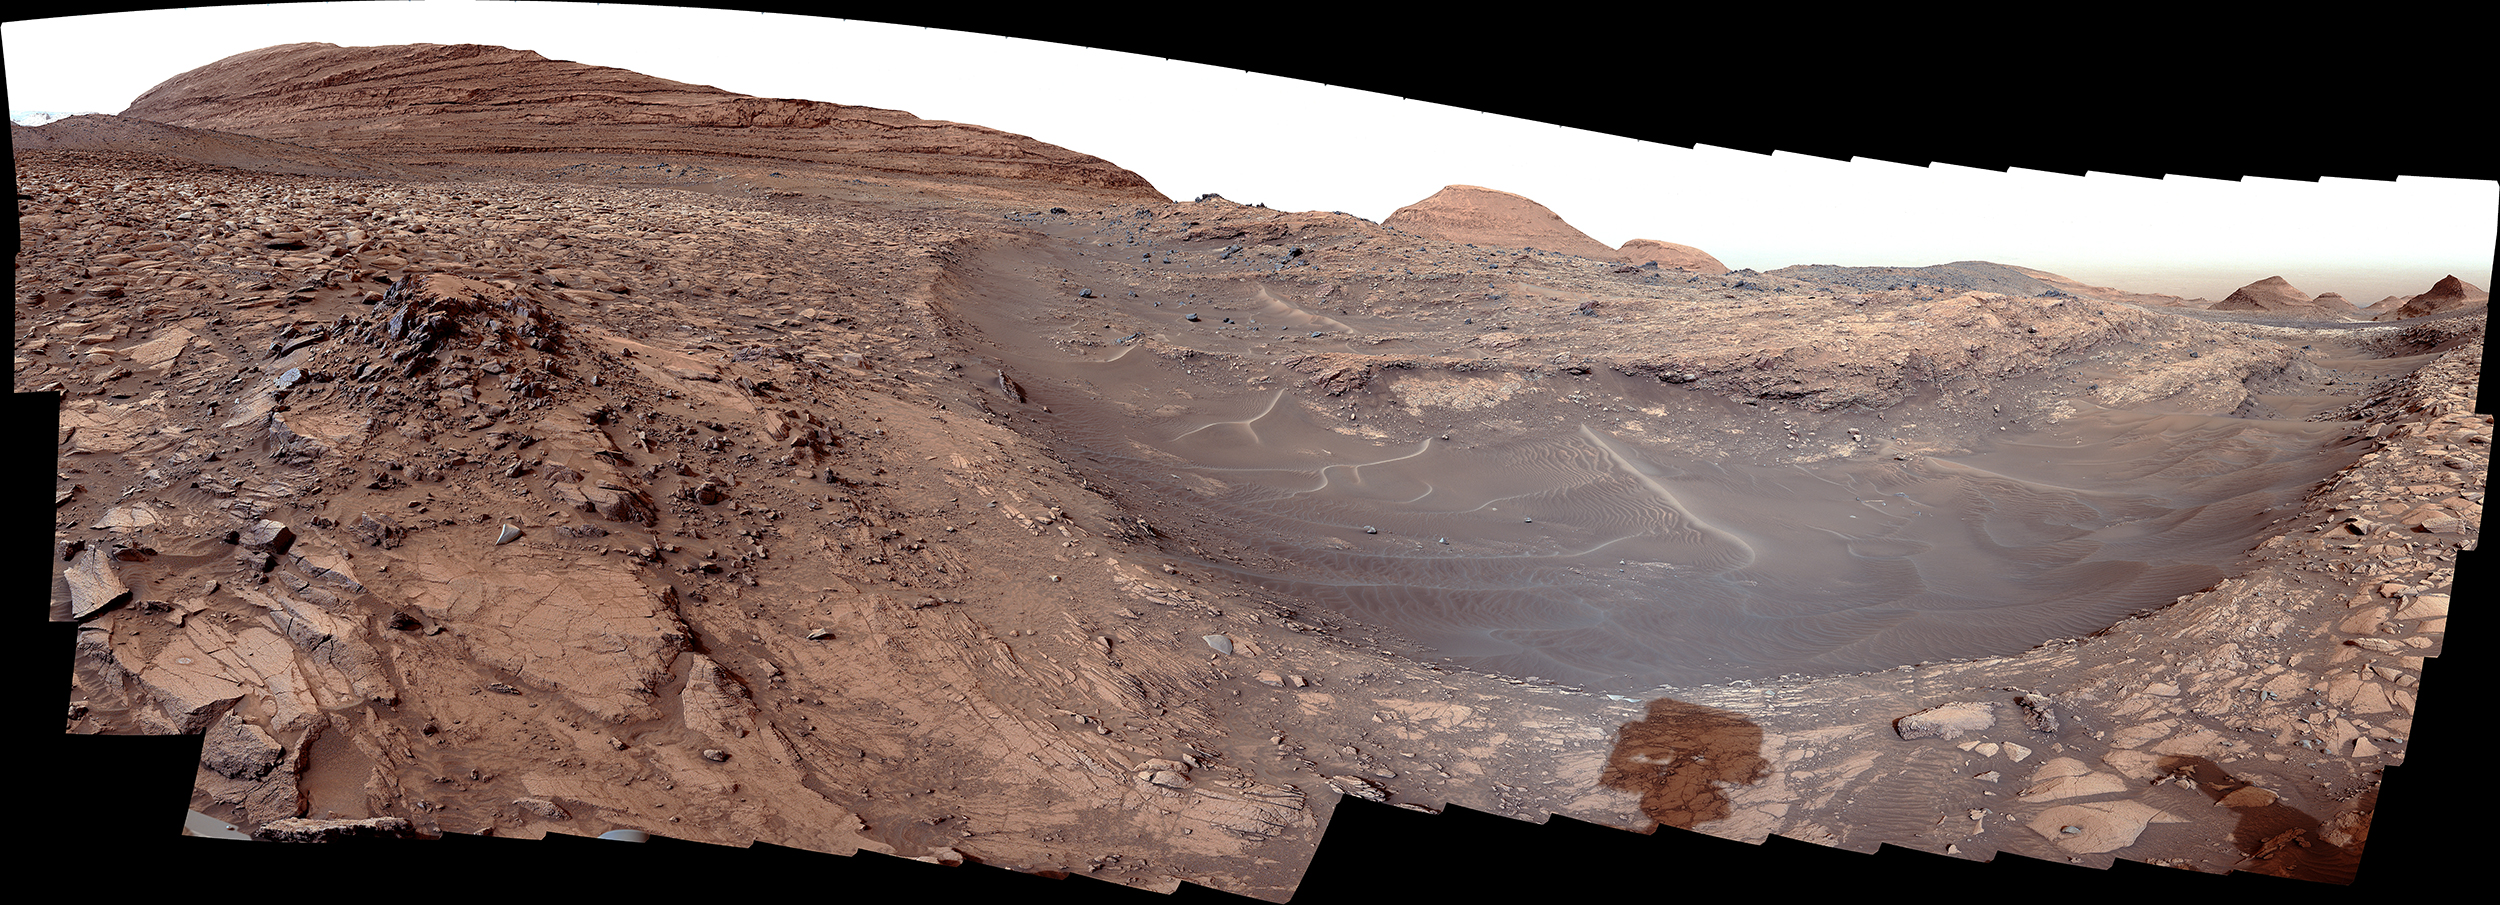 «Όαση στην έρημο»: Το ρόβερ Curiosity της NASA βρίσκει καθαρό θείο σε βράχους του Άρη